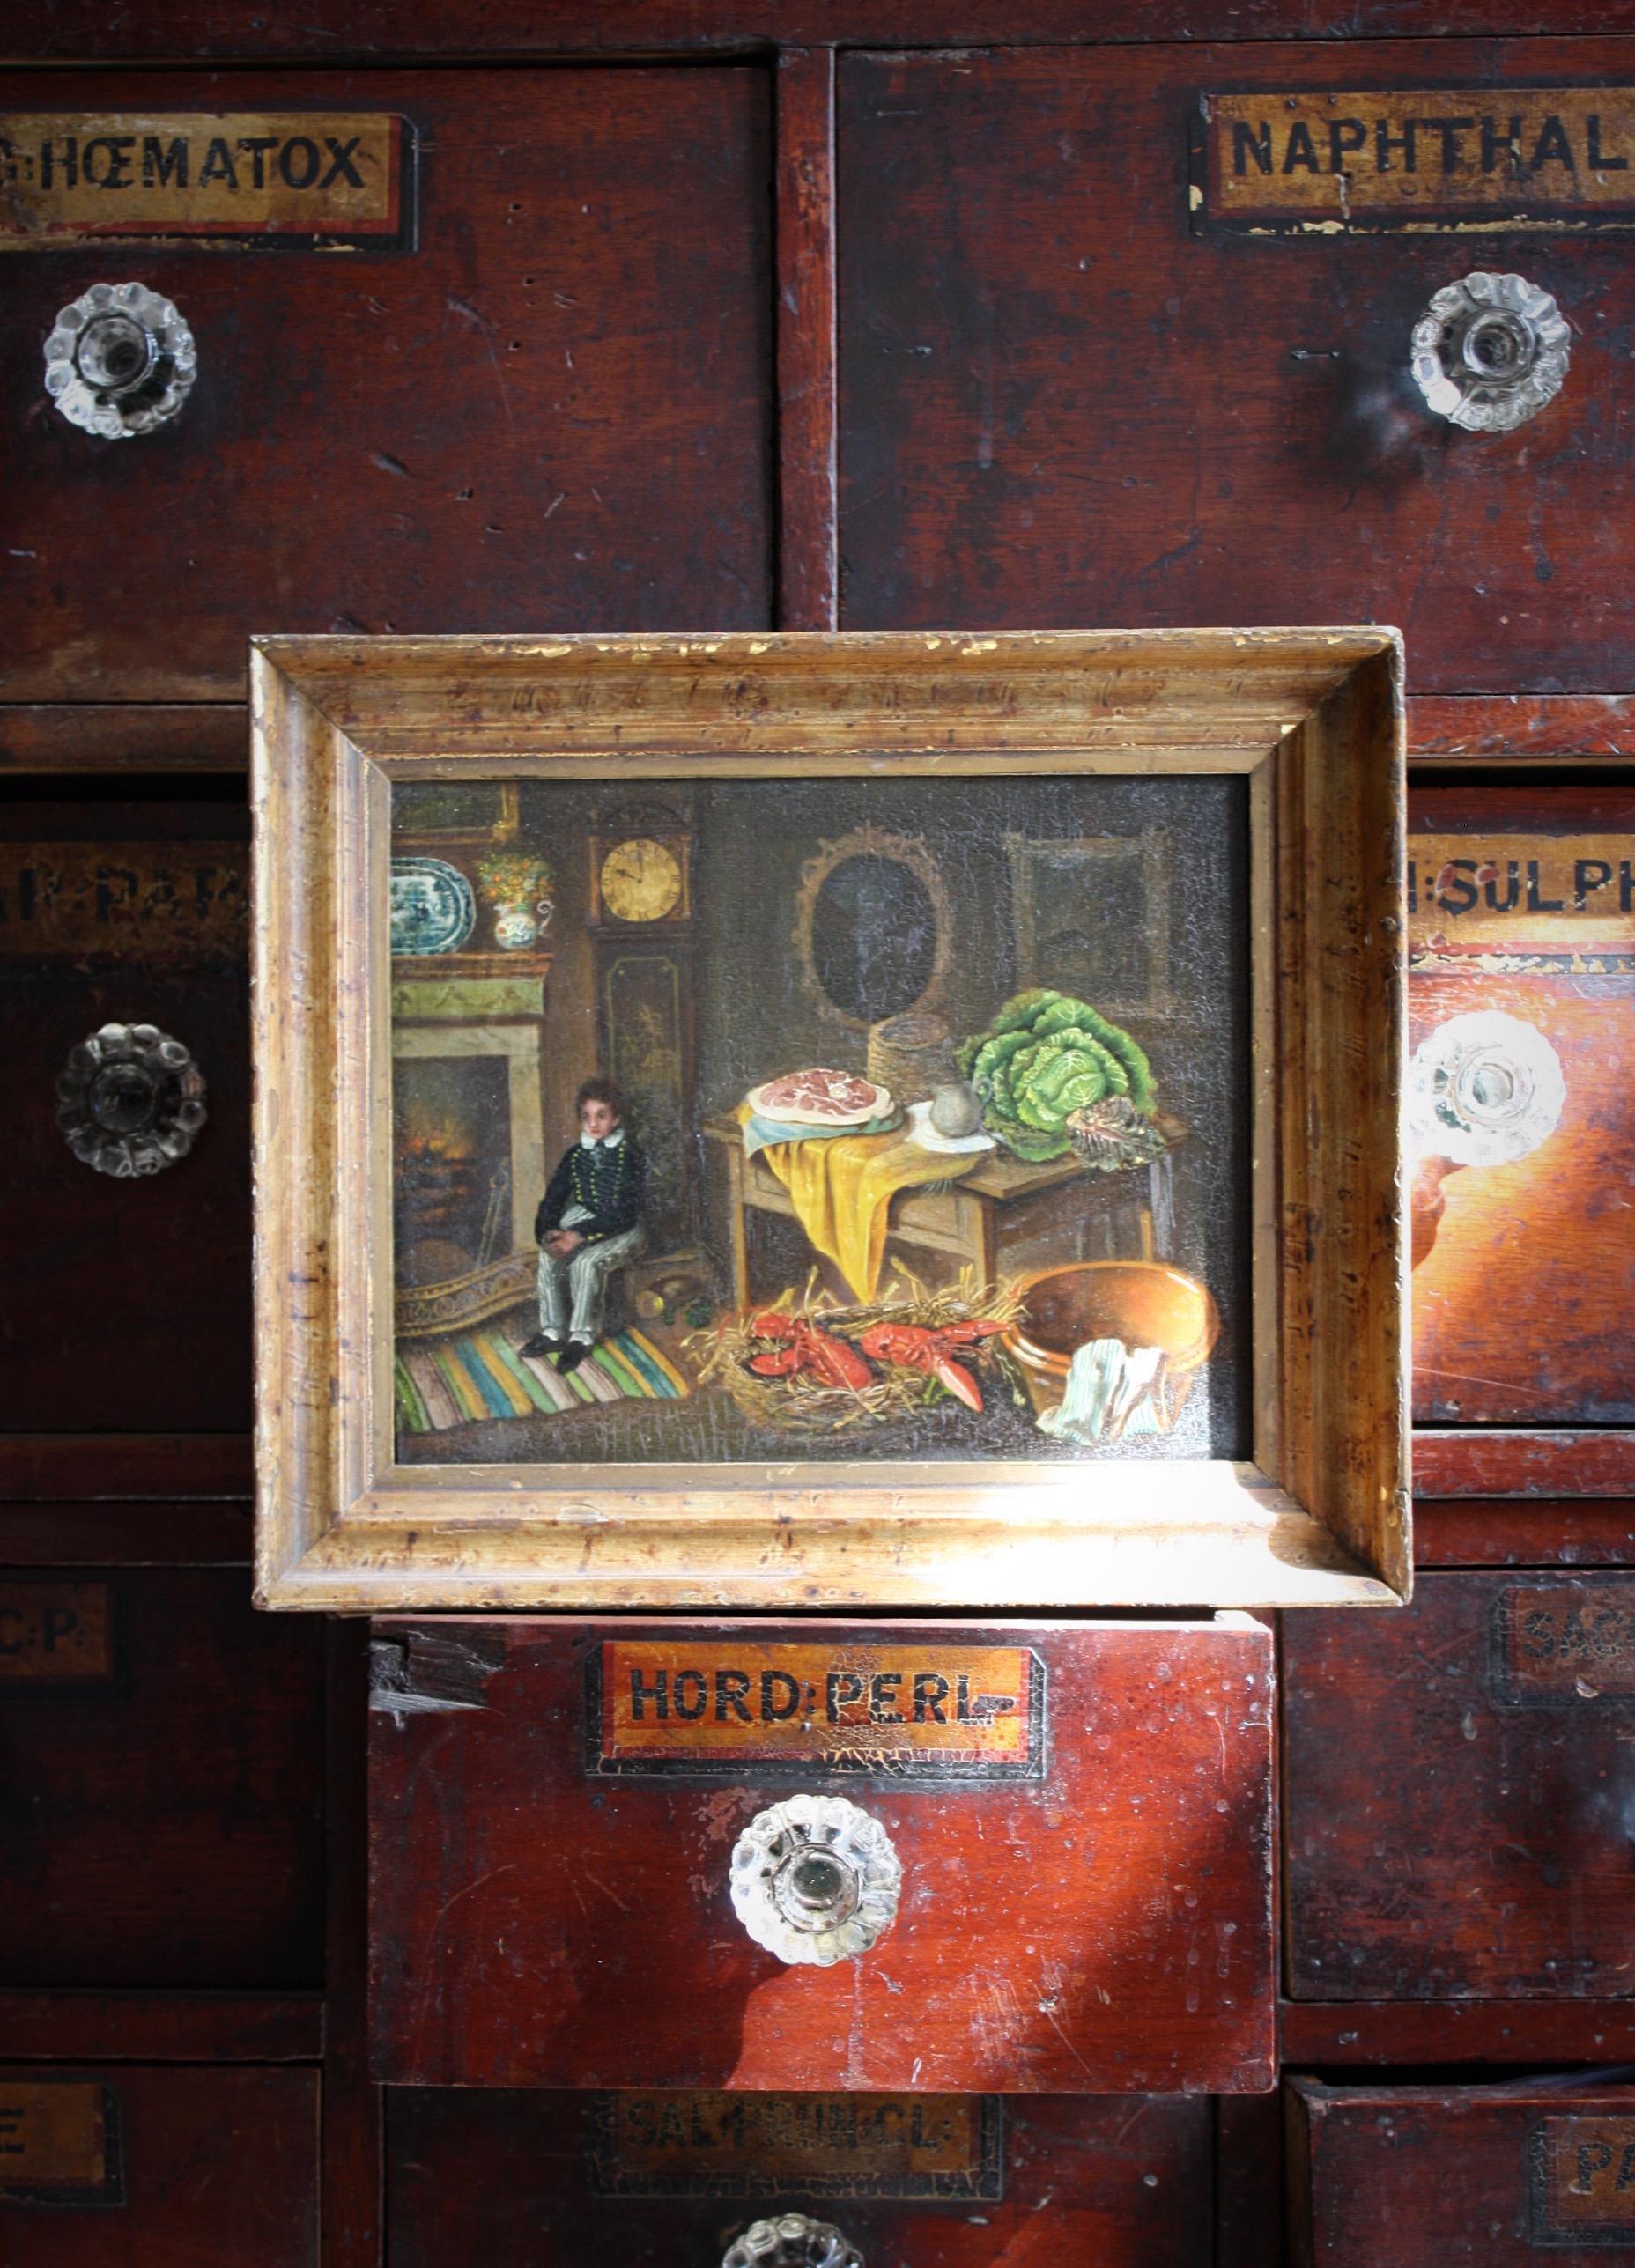 Une intrigante huile sur panneau naïve du début du XIXe siècle, montrant une scène d'intérieur bien meublée d'un petit garçon avec une table garnie de nourriture surdimensionnée. 

vers 1810

Une étiquette au verso indique la Rutland Gallery